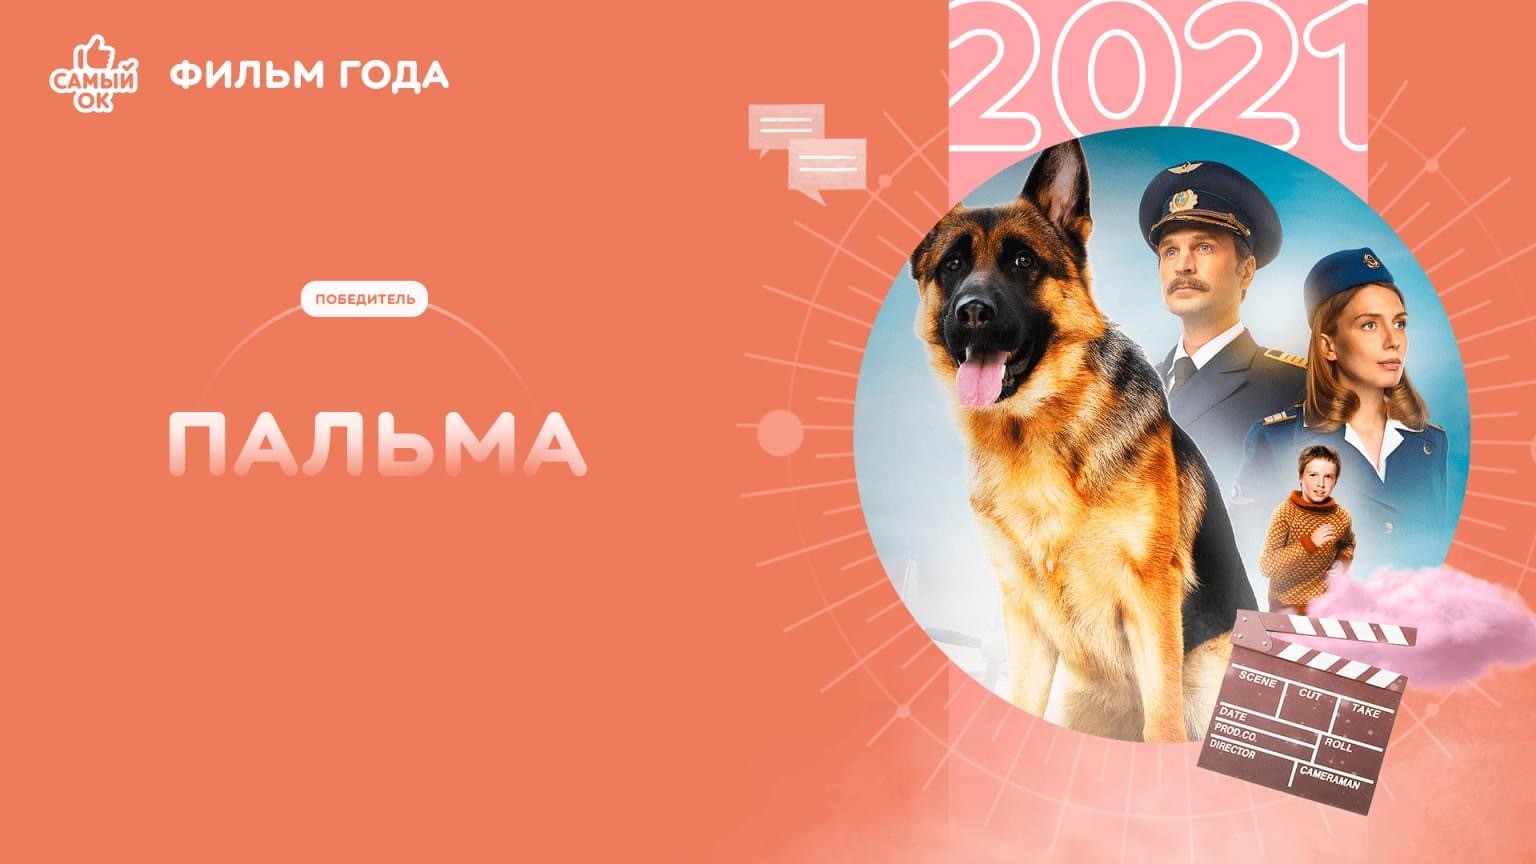 Пользователи «Одноклассников» выбрали лучший российский контент по итогам 2021 г.